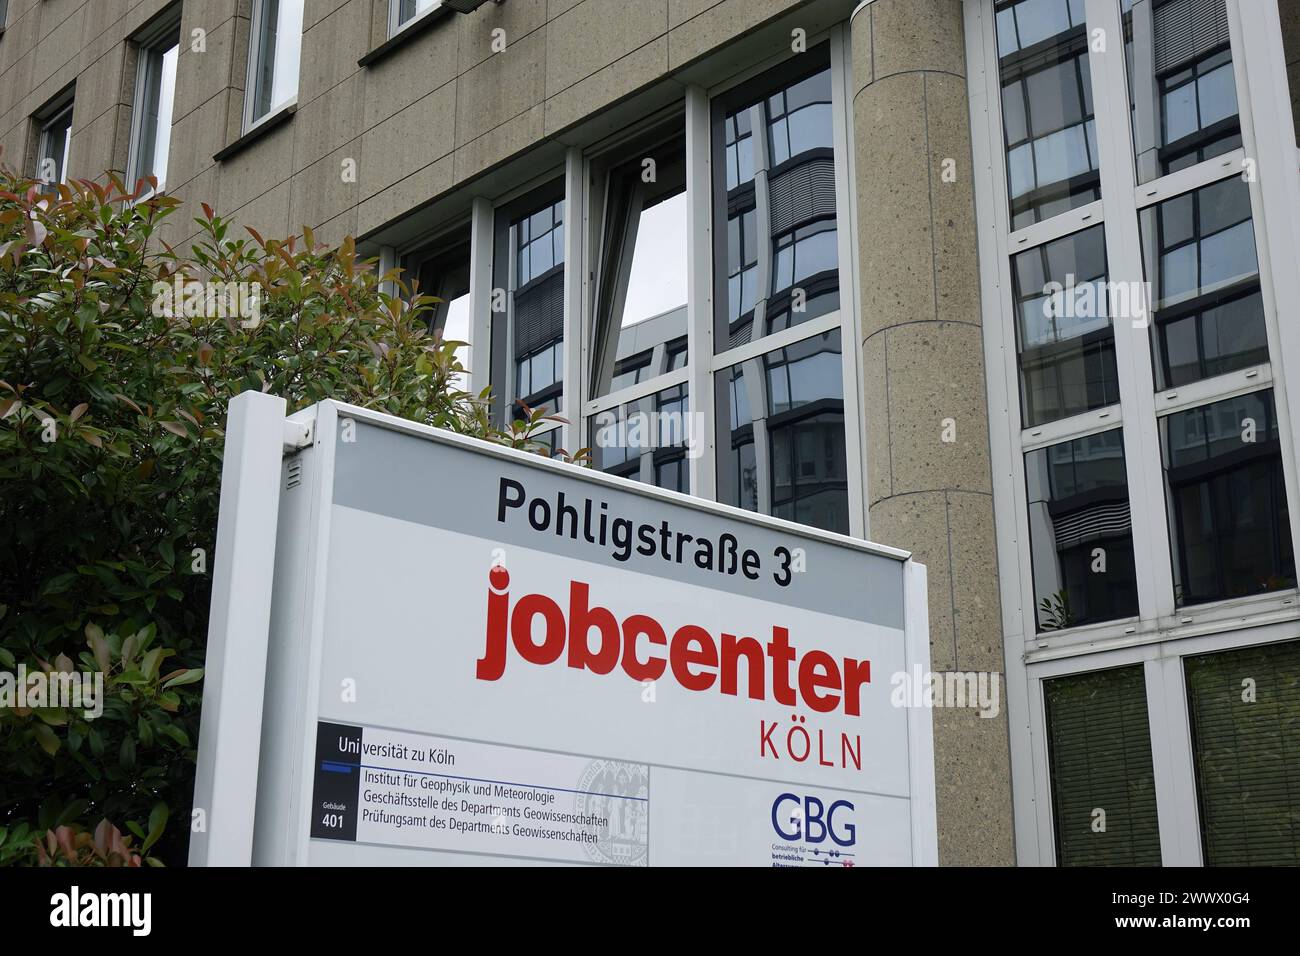 Jobcenter à Köln Jobcenter à Köln, 19.07.2021, Köln, Pohligstrasse, Rhénanie-du-Nord-Westphalie, Ein Jobcenter befindet sich in der Pohligstrasse von Köln. *** Jobcenter in Cologne Jobcenter in Cologne, 19 07 2021, Cologne, Pohligstrasse, Rhénanie du Nord-Westphalie, un centre d'emploi est situé dans la Pohligstrasse de Cologne Banque D'Images